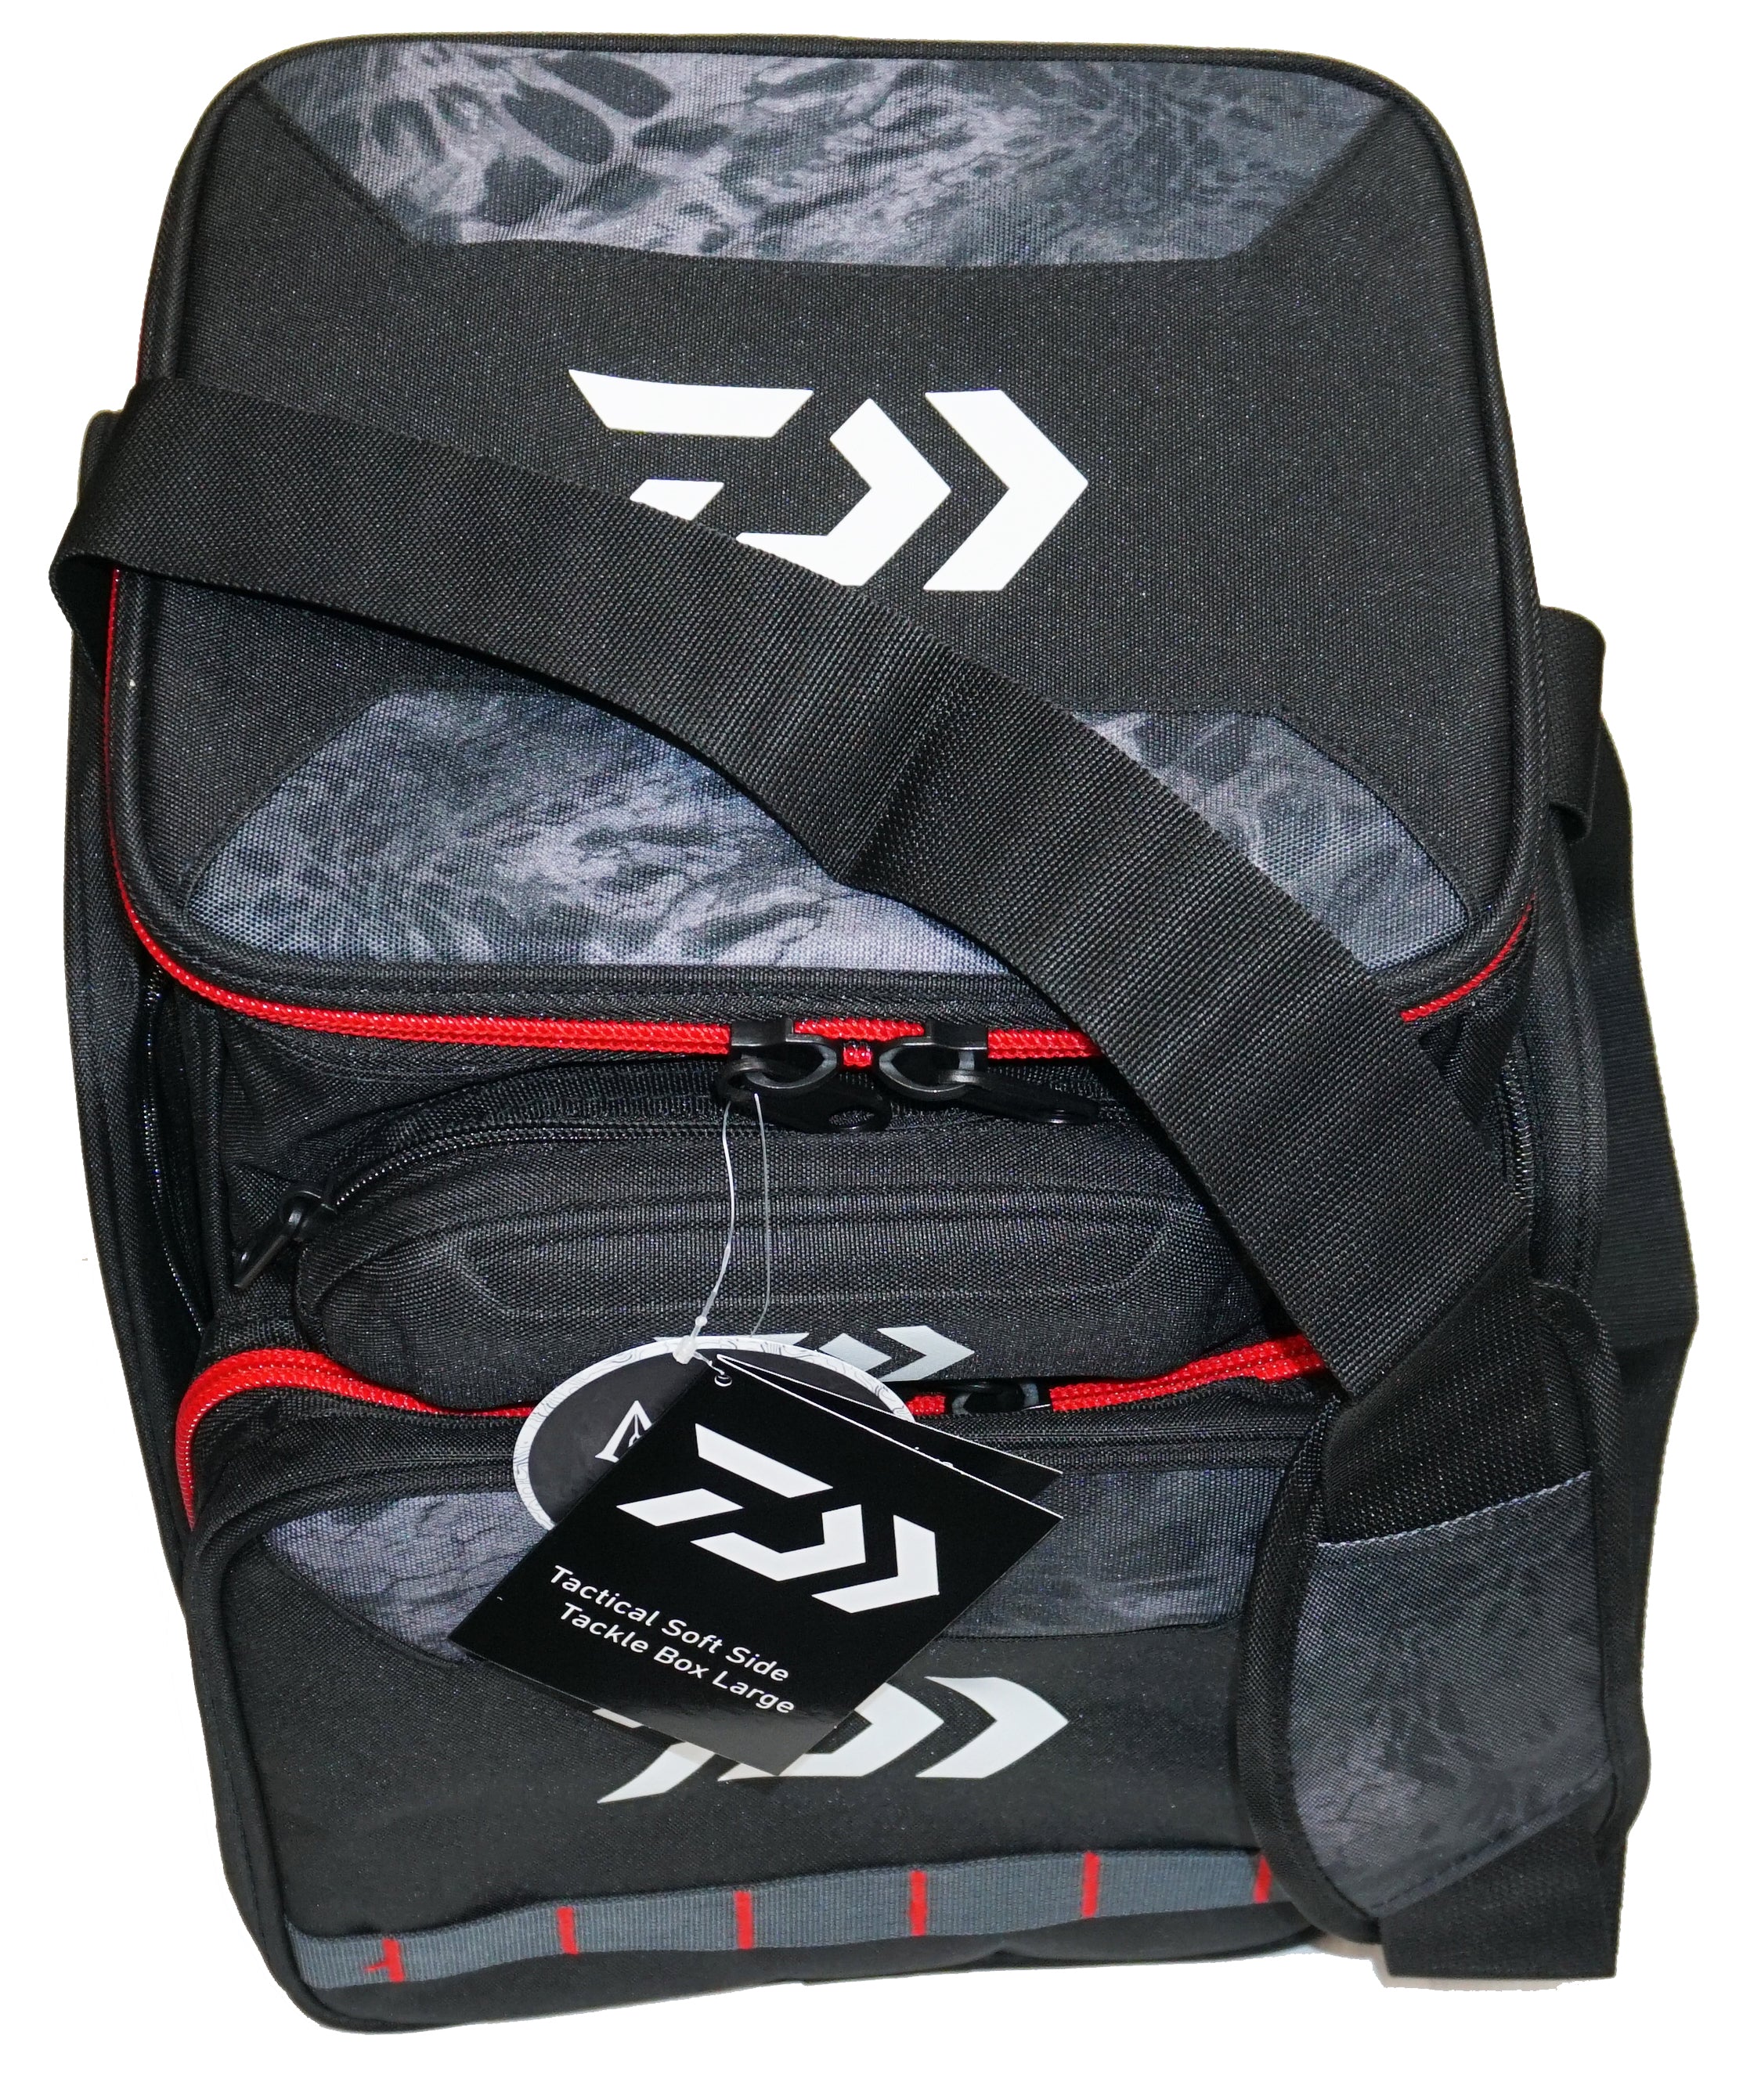 Daiwa D-VEC Tactical Backpack